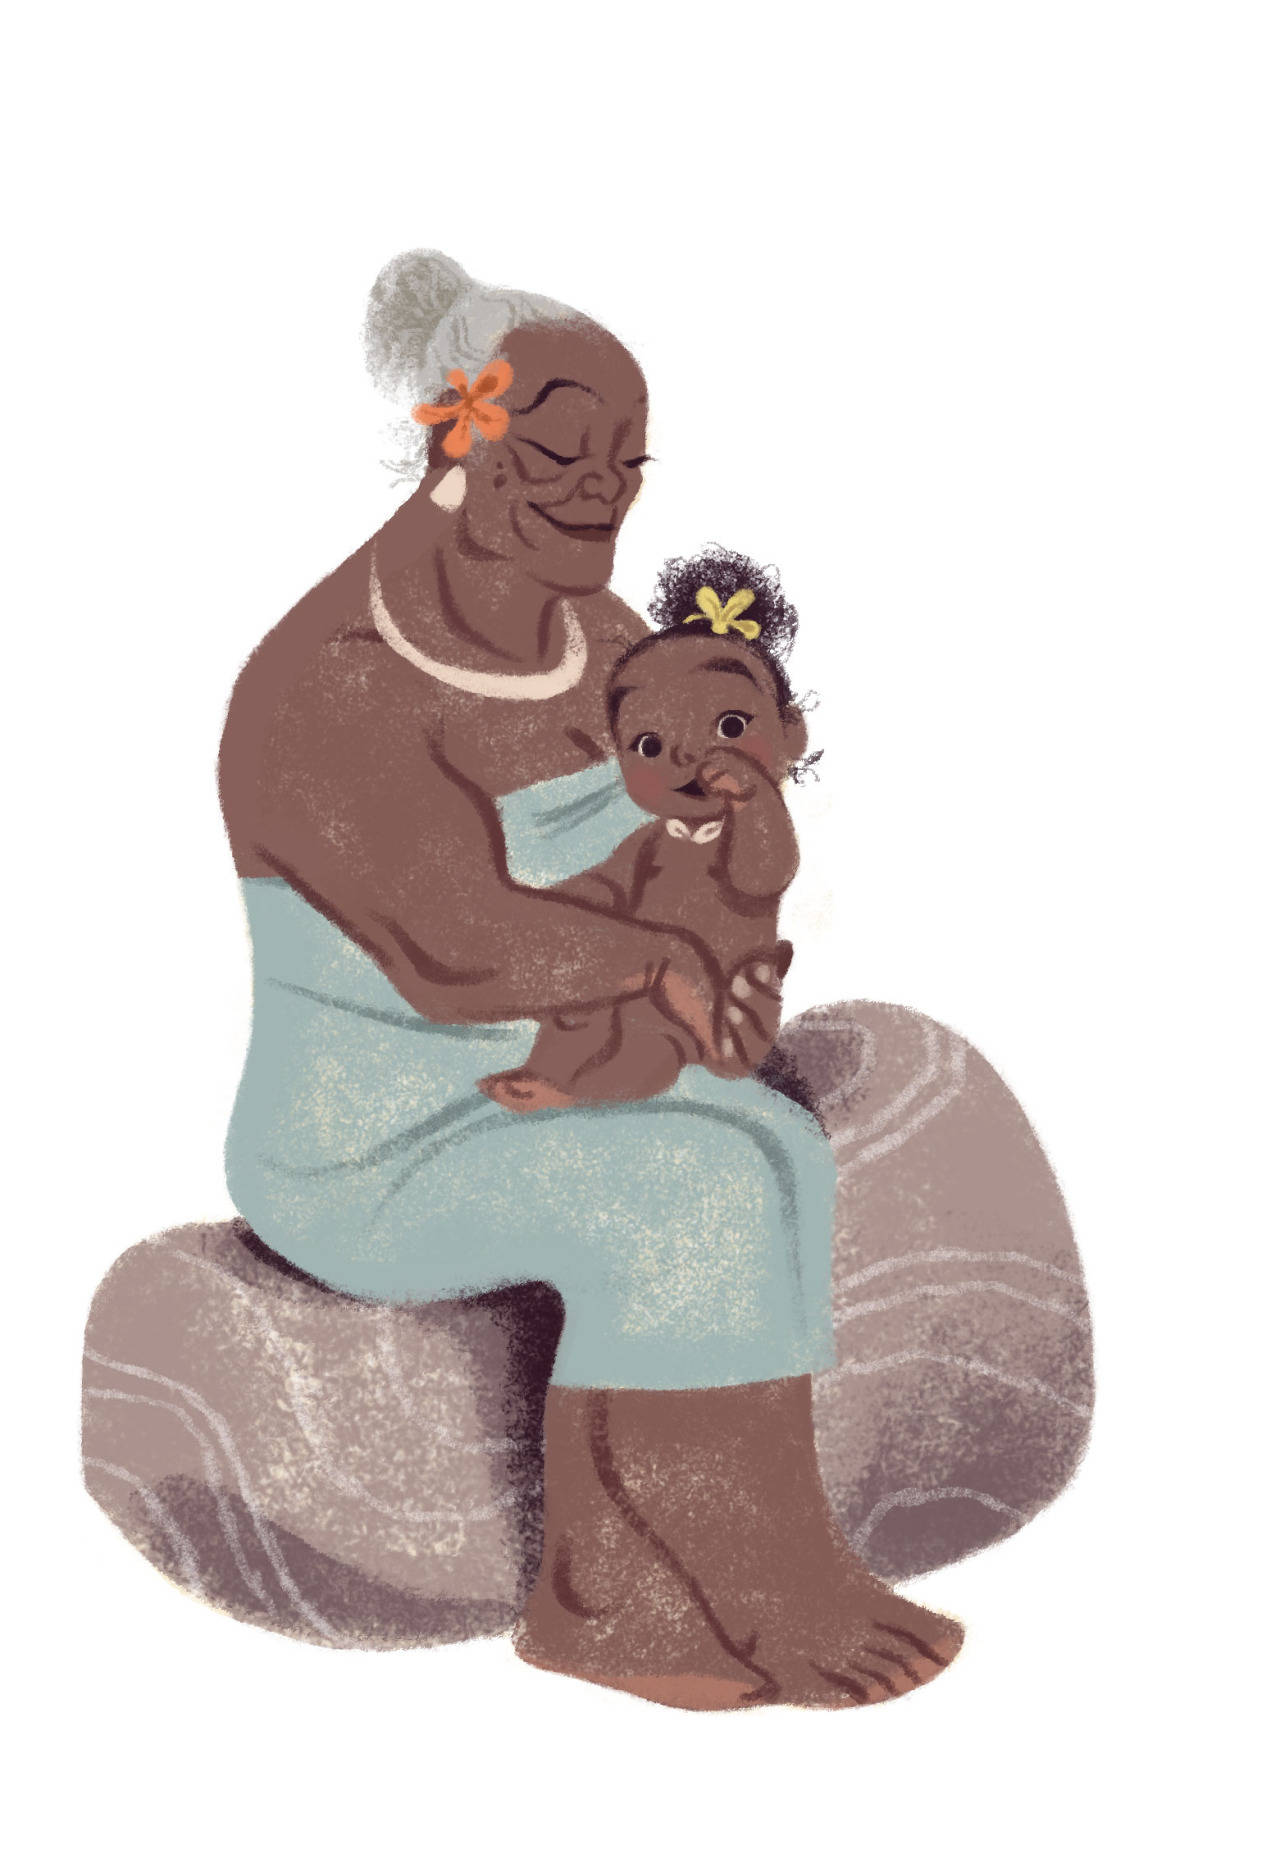 Baby Moana And Grandma Tala Wallpaper